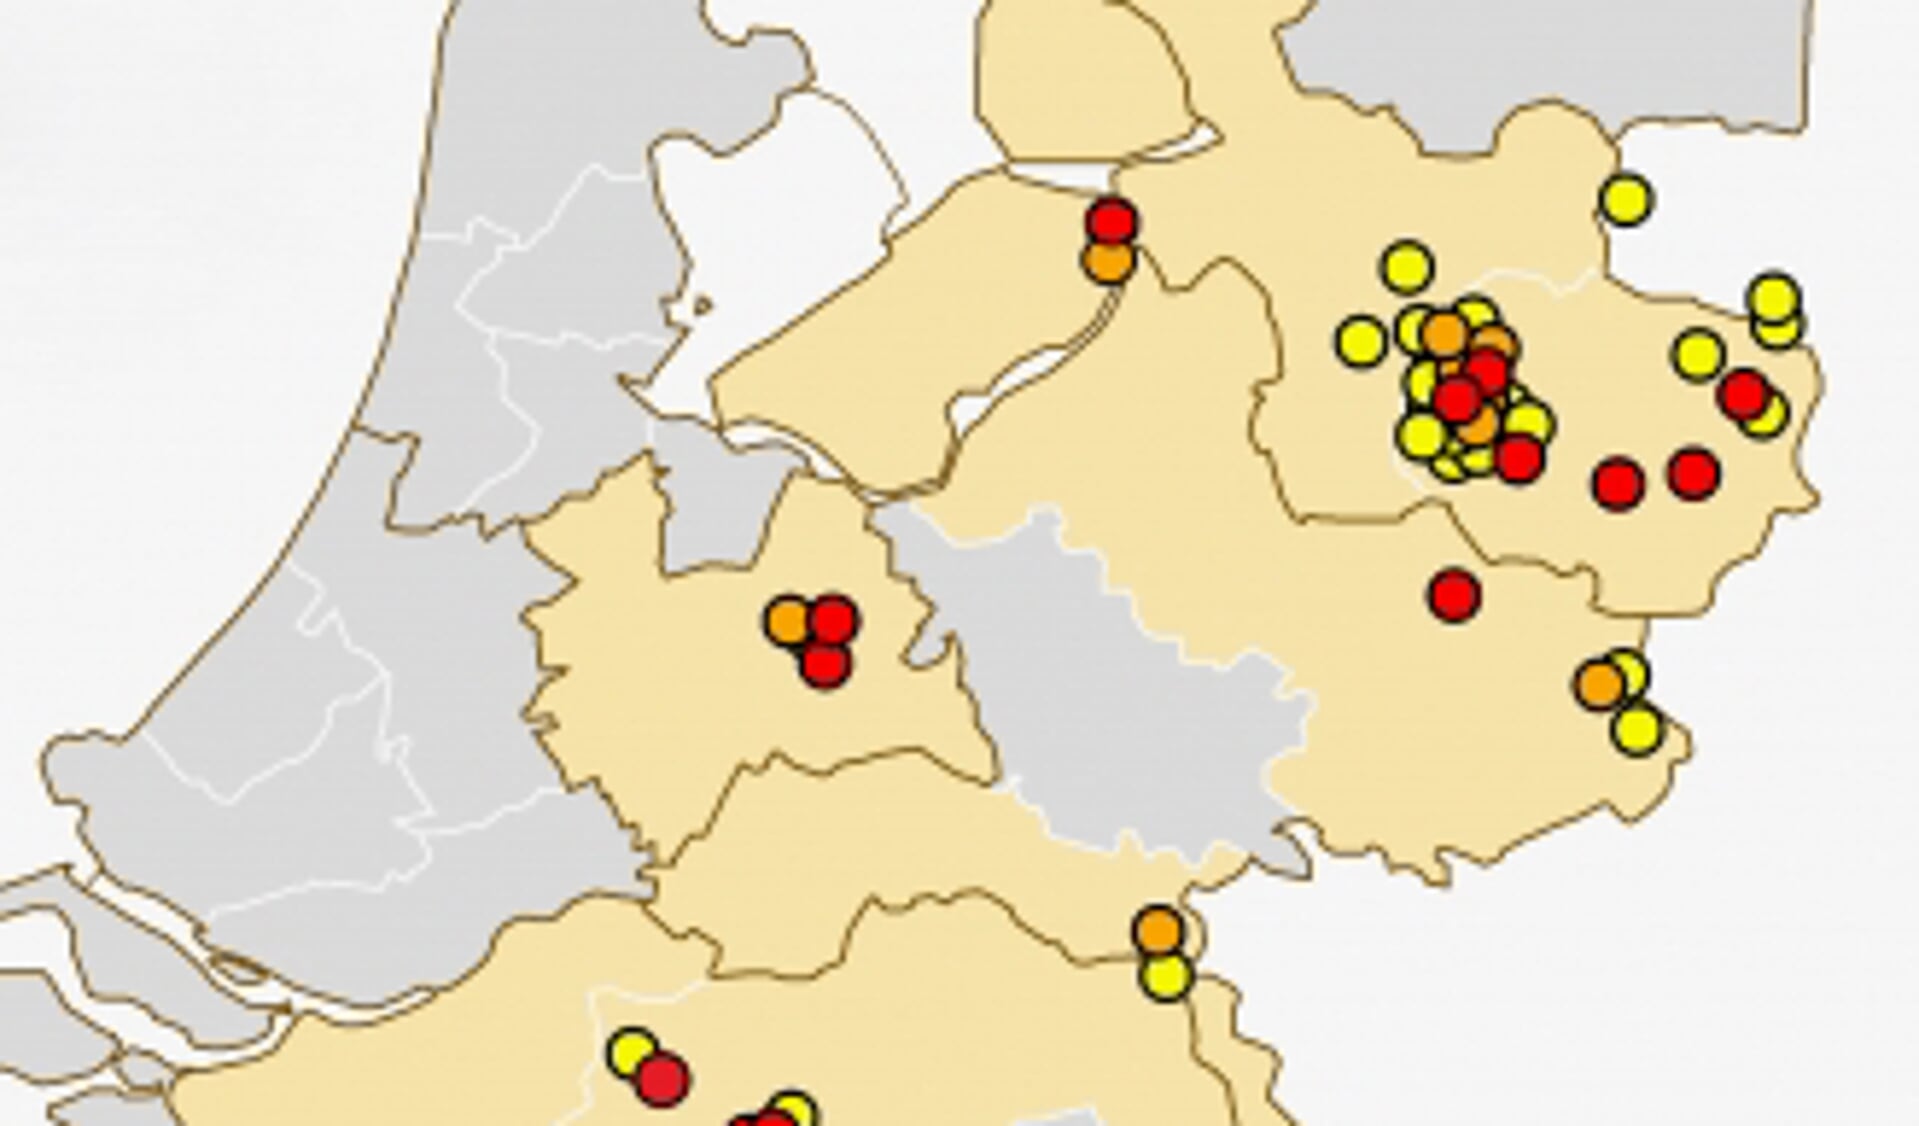 De rode punten geven aan waar een patiënt TBE heeft opgelopen. De oranje punten zijn locaties waar het TBE-virus is aangetoond in wild of teken of kleine knaagdieren. De gele punt laten zien waar antistoffen tegen TBE is aangetoond in wild.